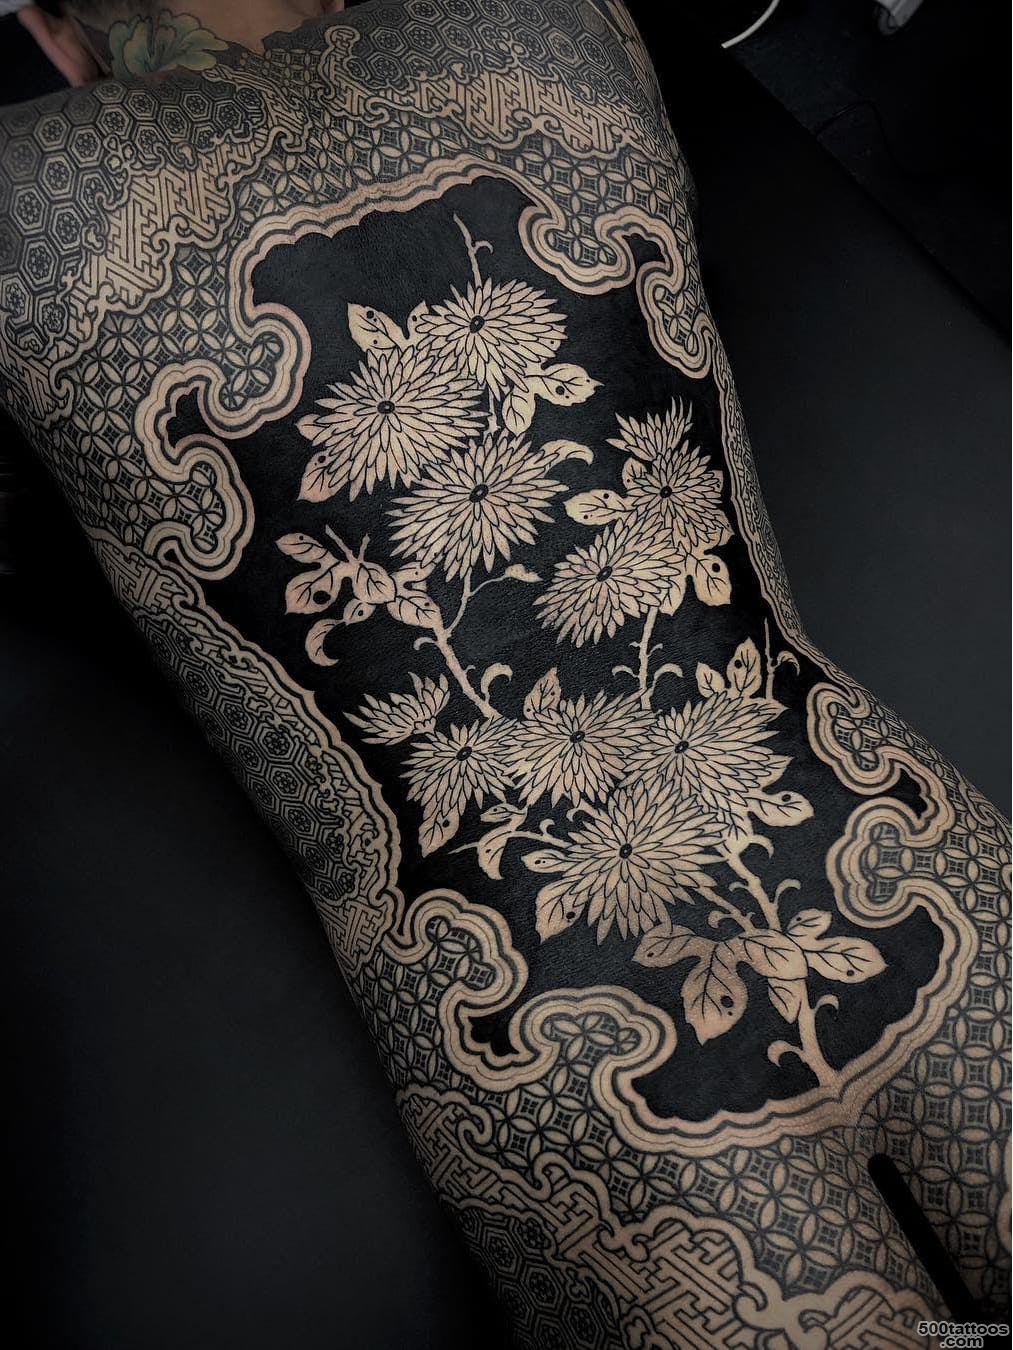 Ornamental-tattoos-17.jpg